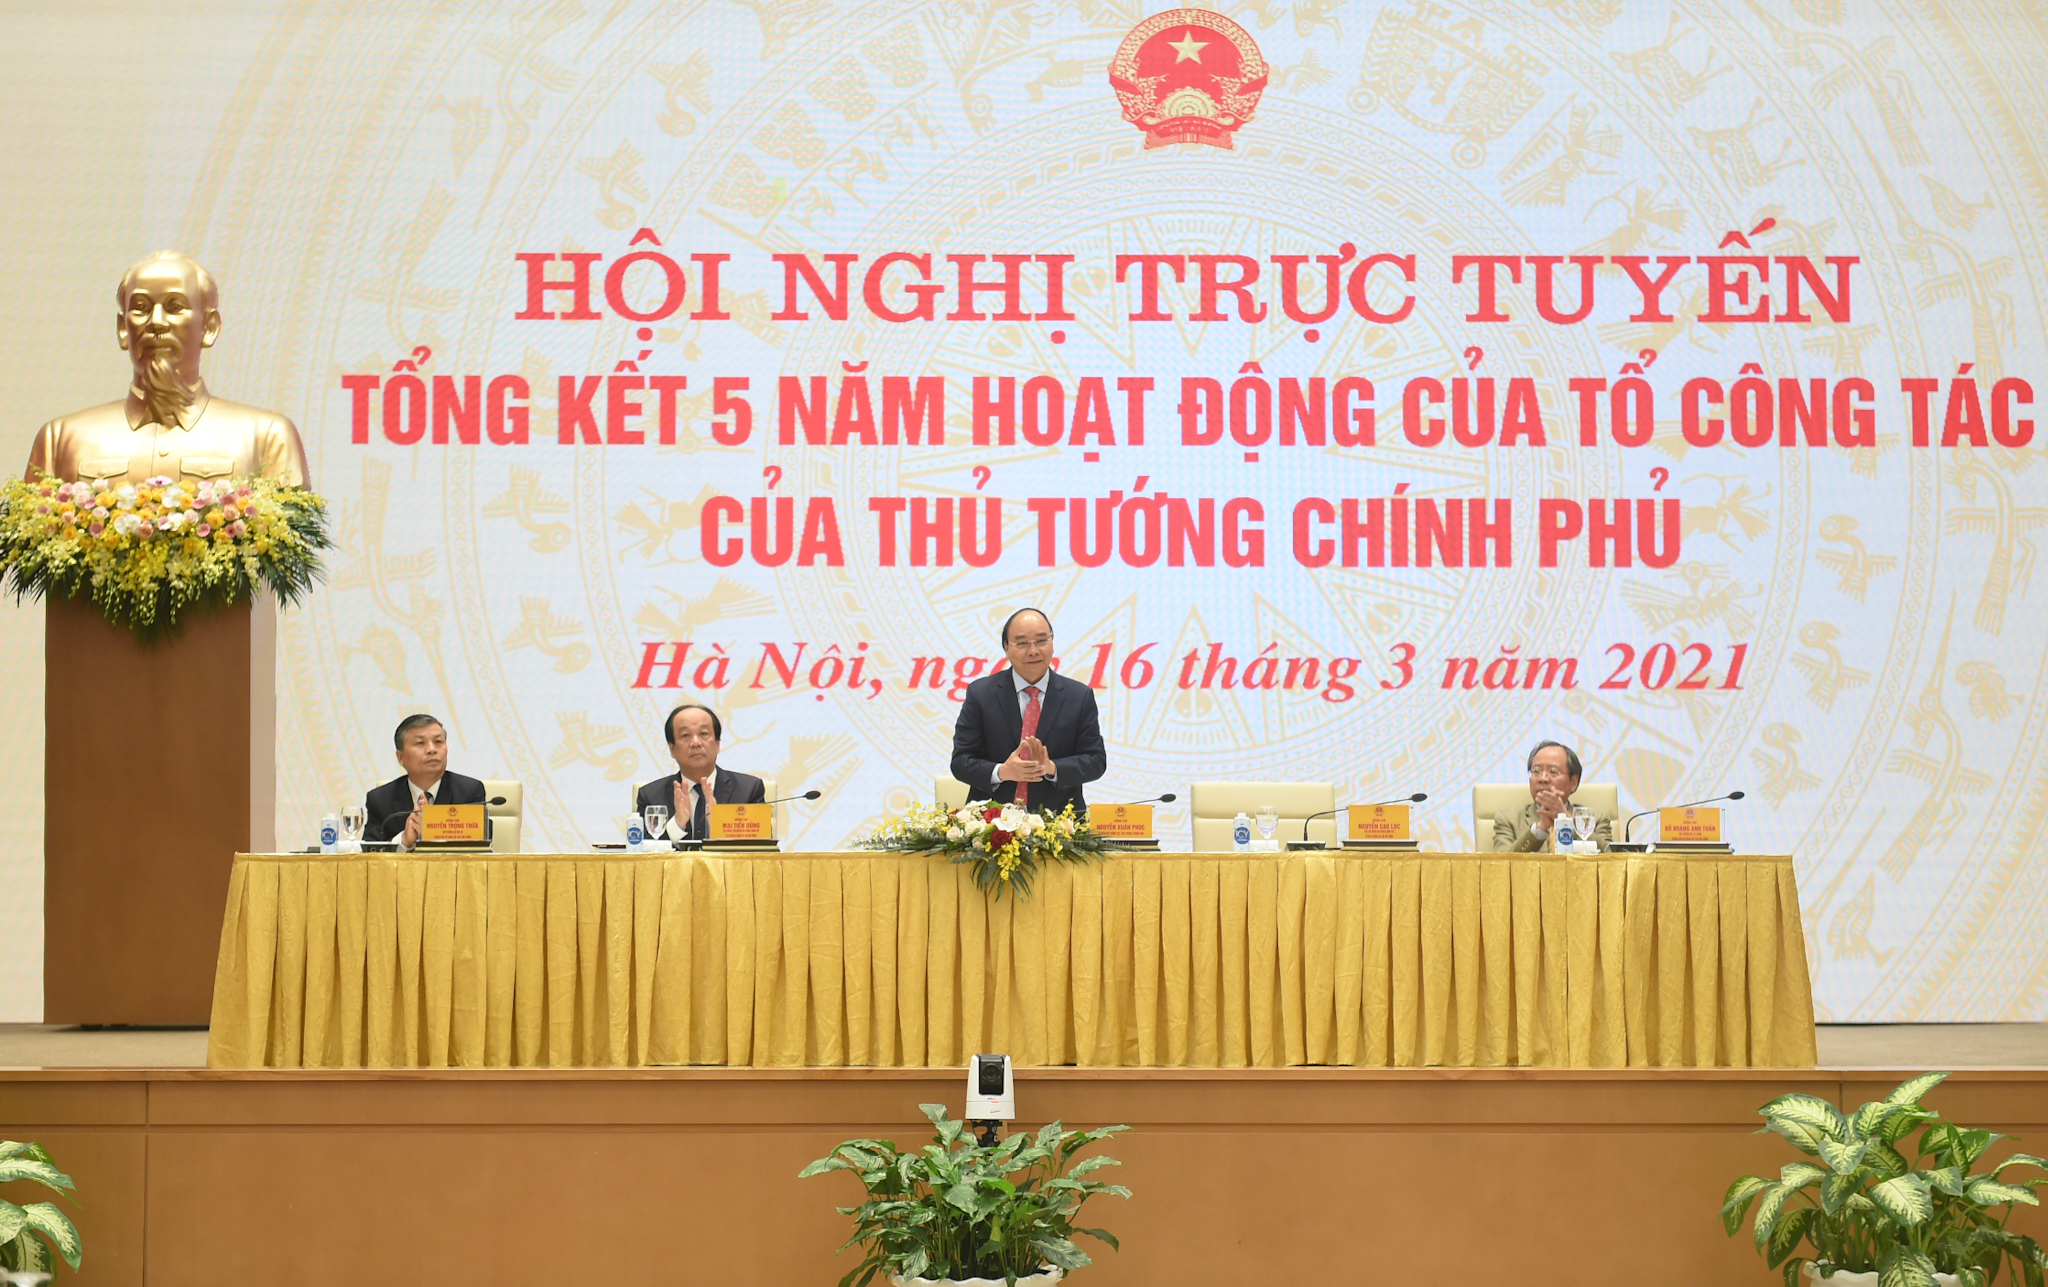 Thủ tướng Nguyễn Xuân Phúc chủ trì Hội nghị trực tuyến tổng kết 5 năm hoạt động của Tổ công tác của Thủ tướng Chính phủ